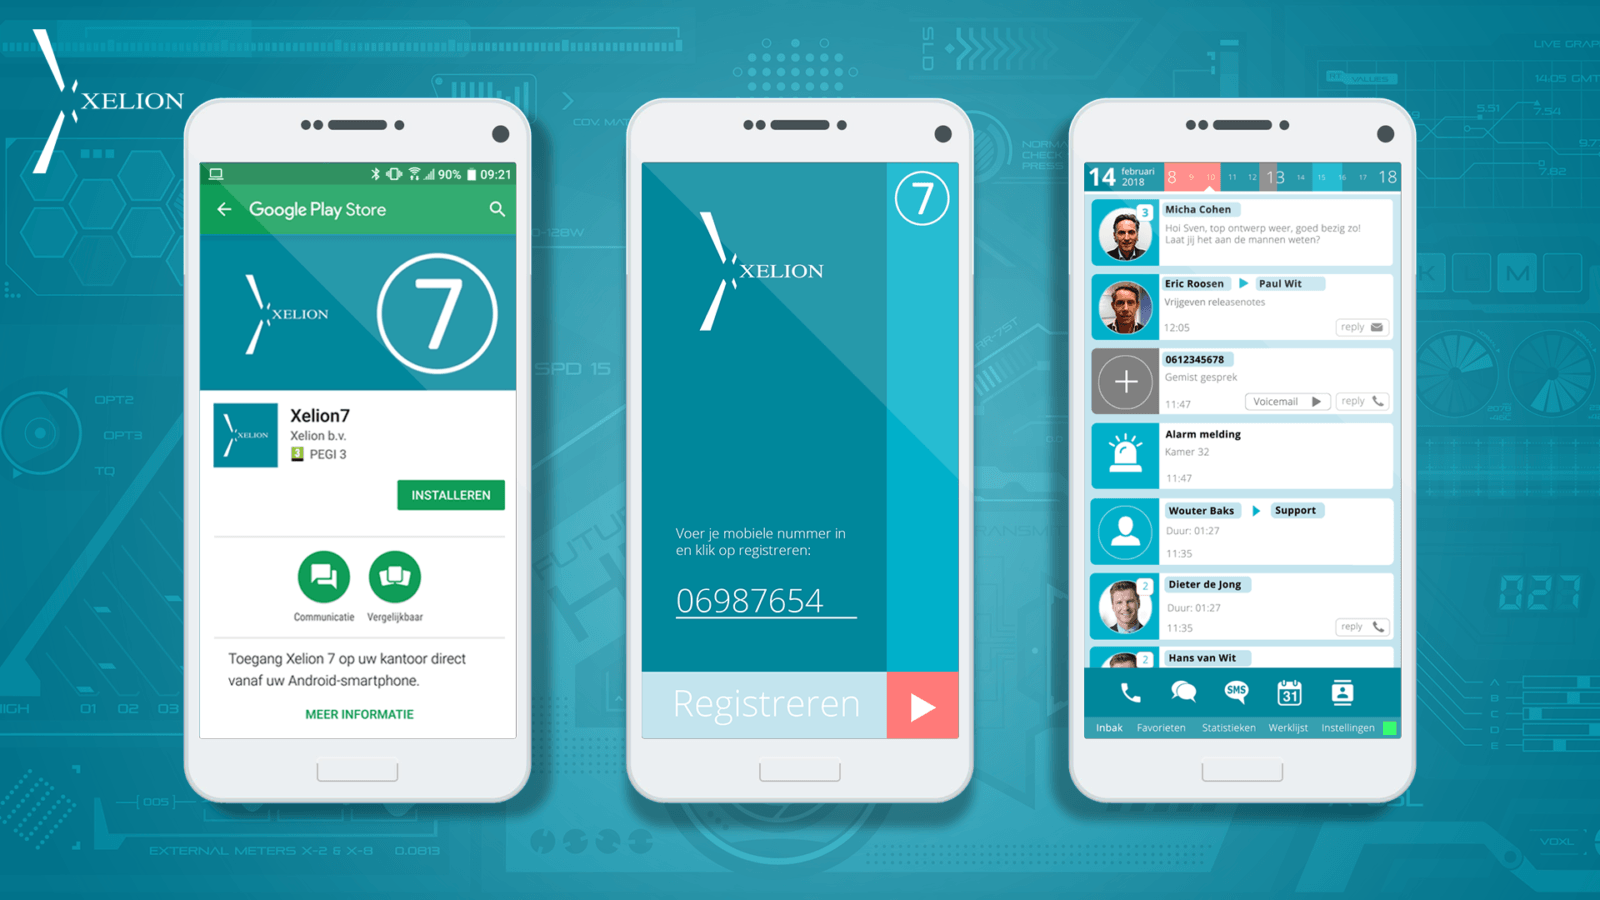 xelion-app-smartphone-1